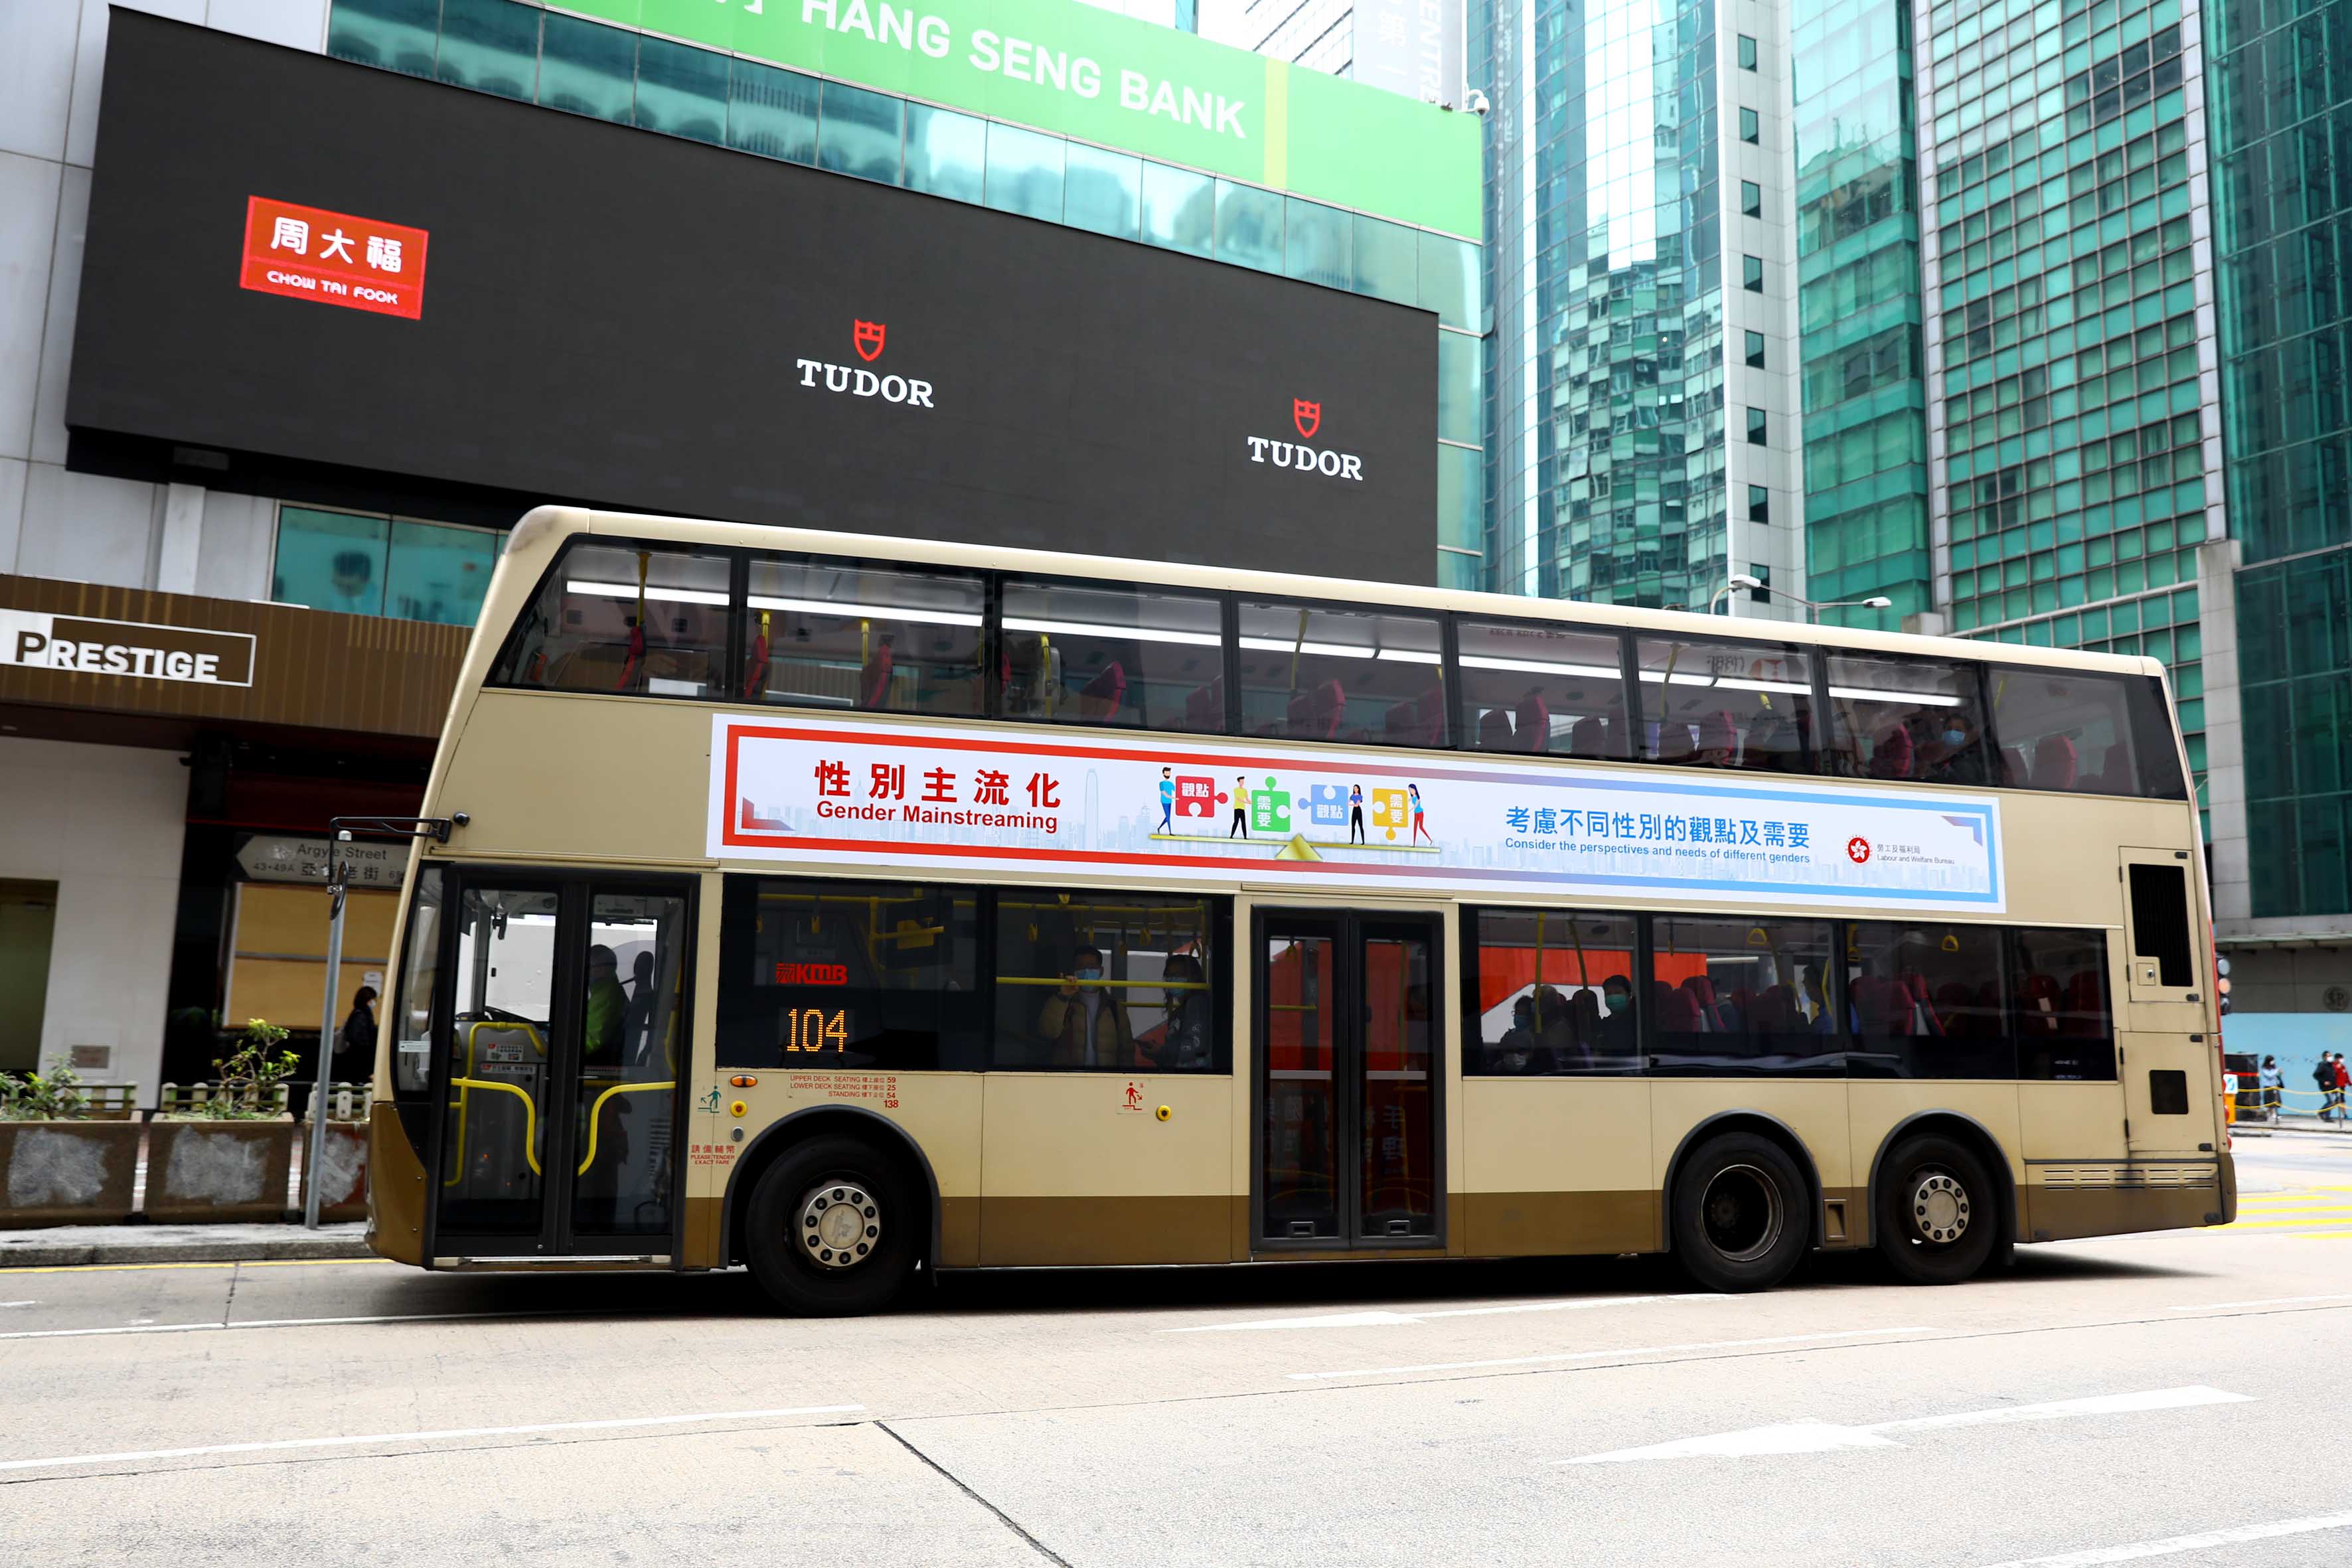 「性别主流化」巴士车身及车厢广告 照片1